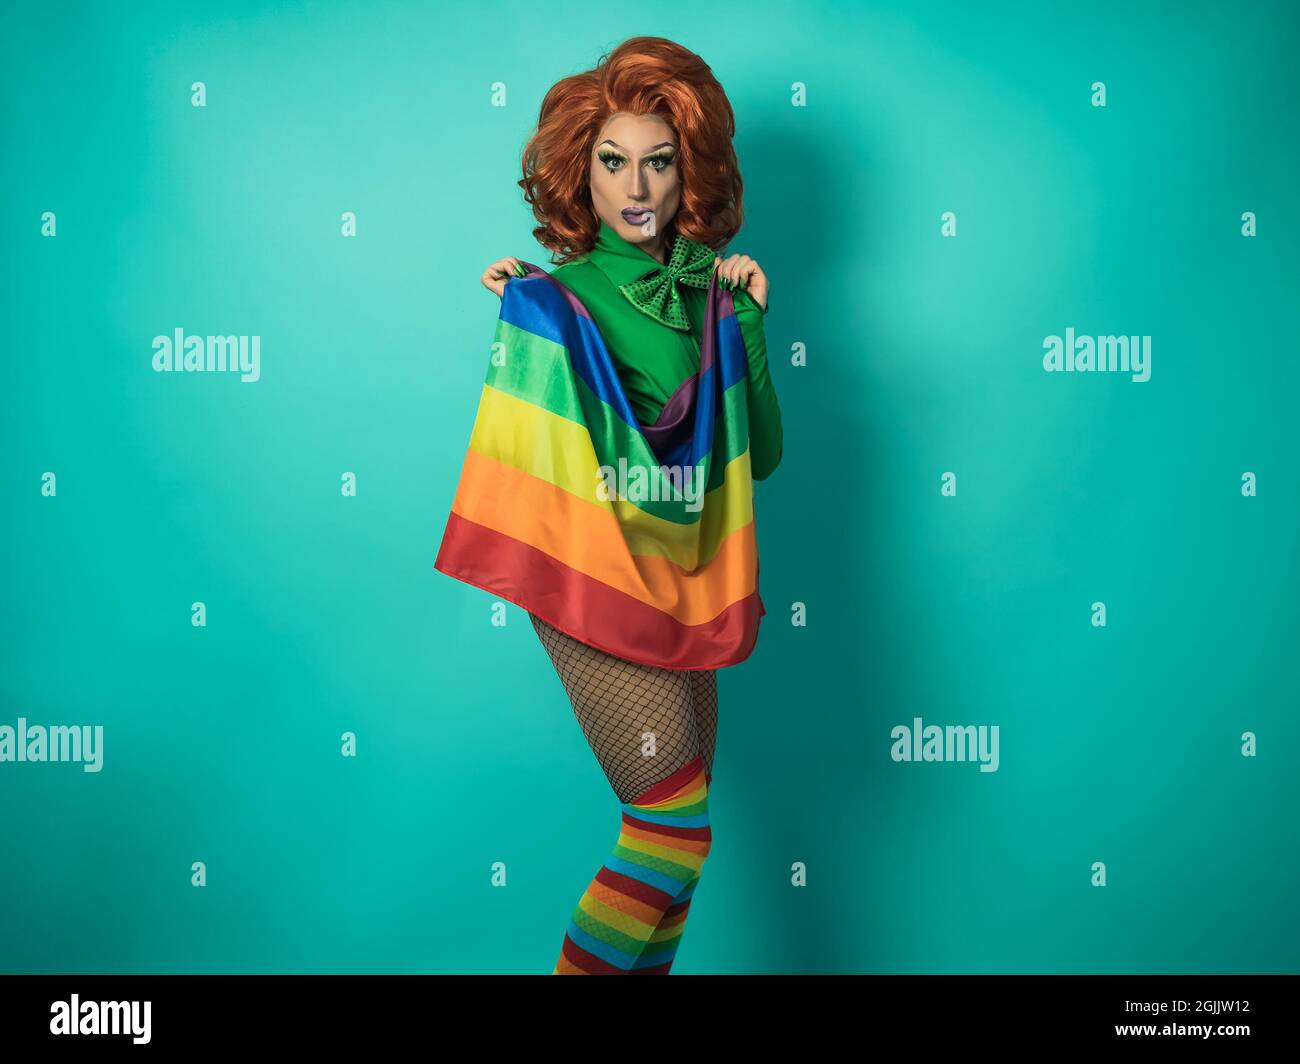 Feliz Drag reina celebrando el orgullo gay sosteniendo la bandera del arco iris - LGBTQ concepto de comunidad social Foto de stock